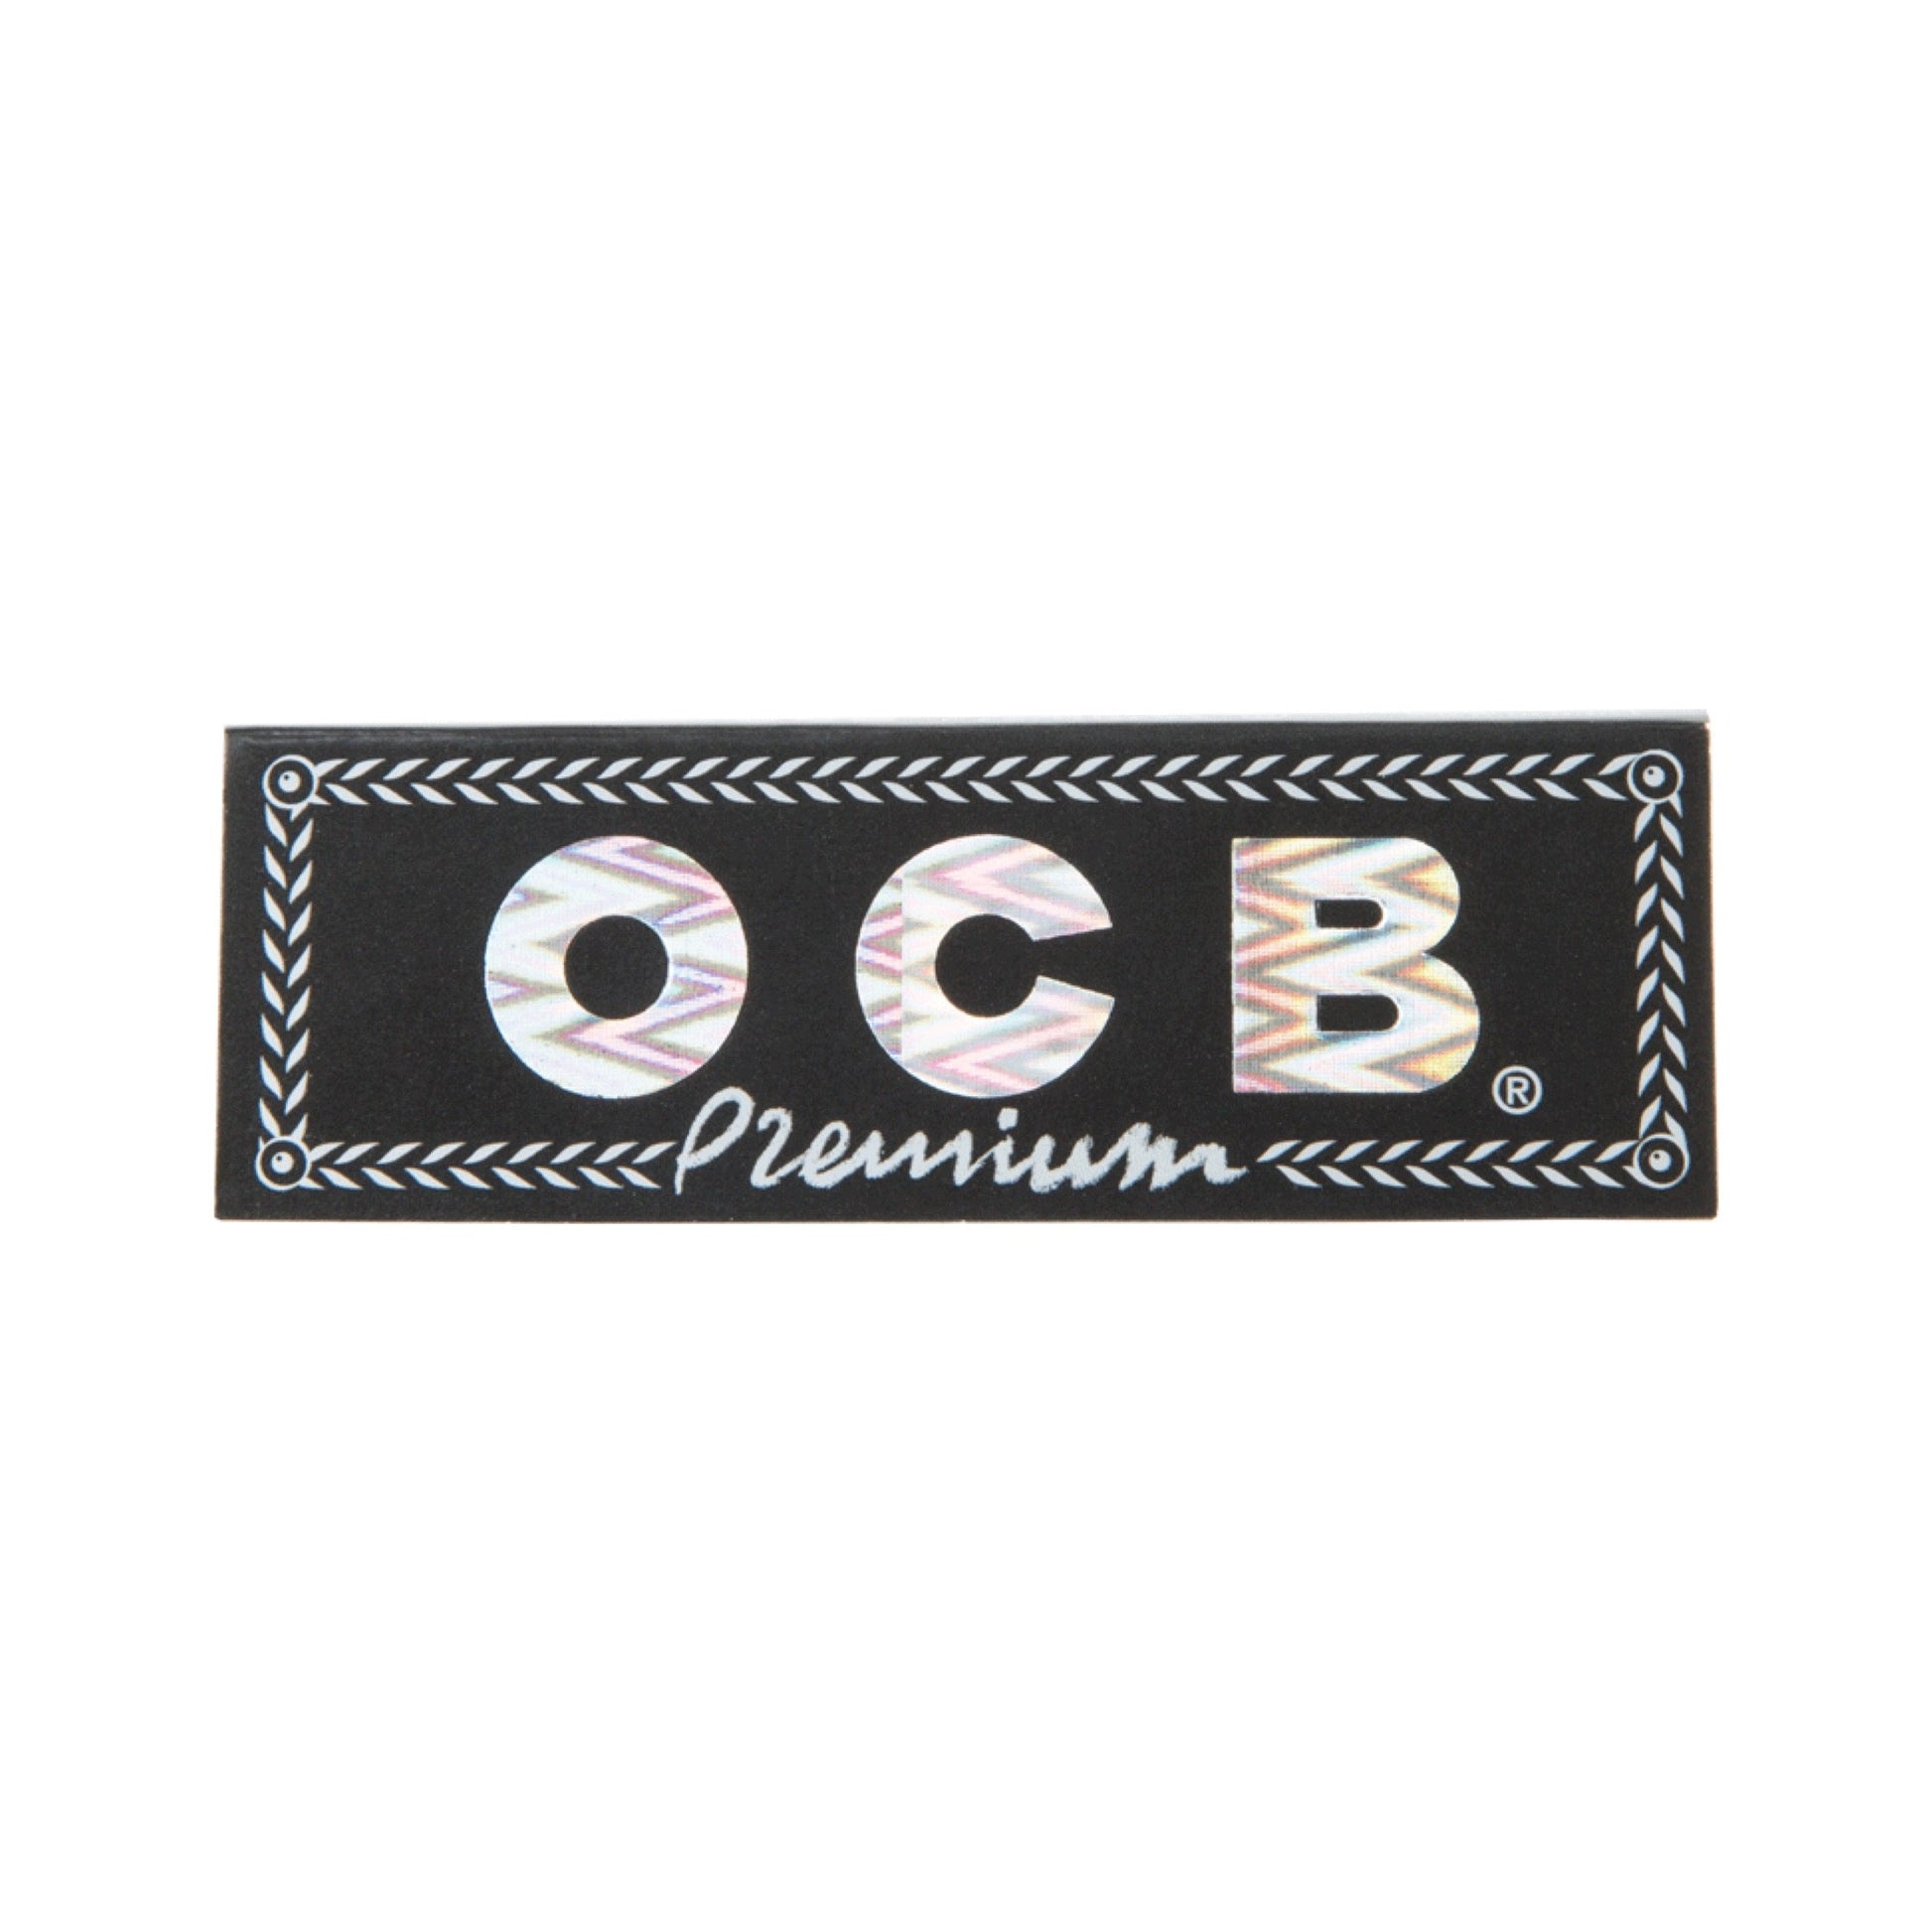 OCB 1.25” Premium Rolling Papers 